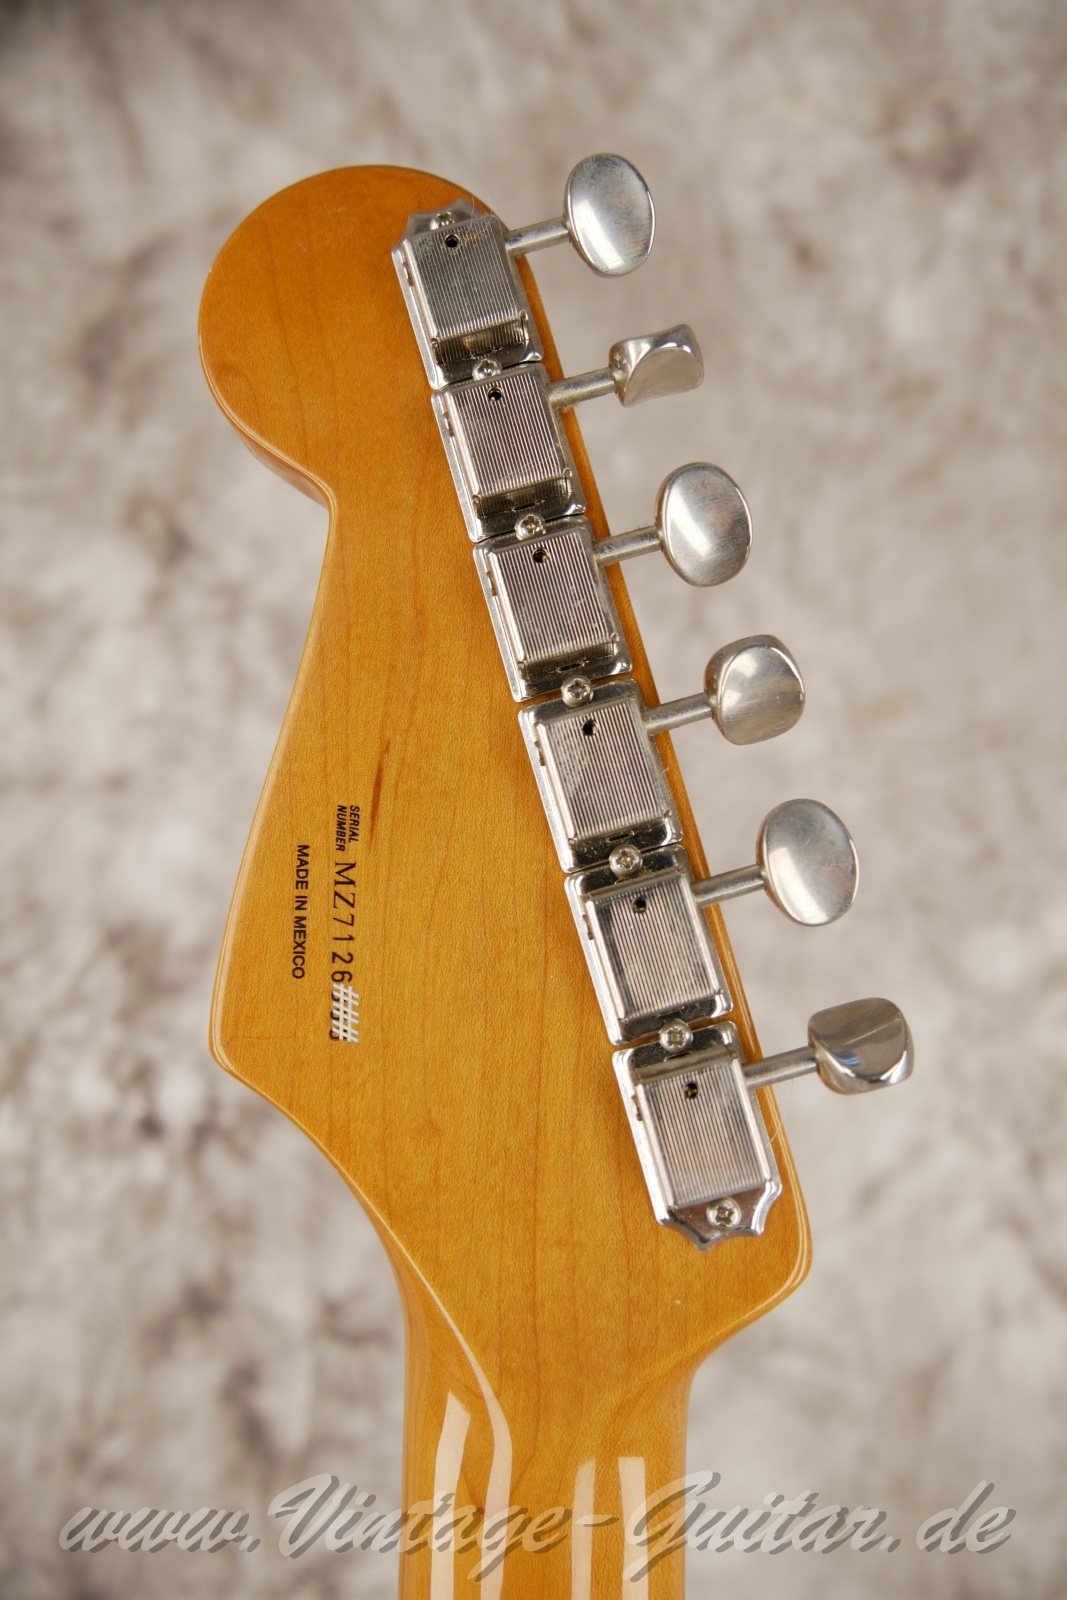 Fener-Stratocaster-Classic-player-series-50s-2007-sunburst-004.jpg